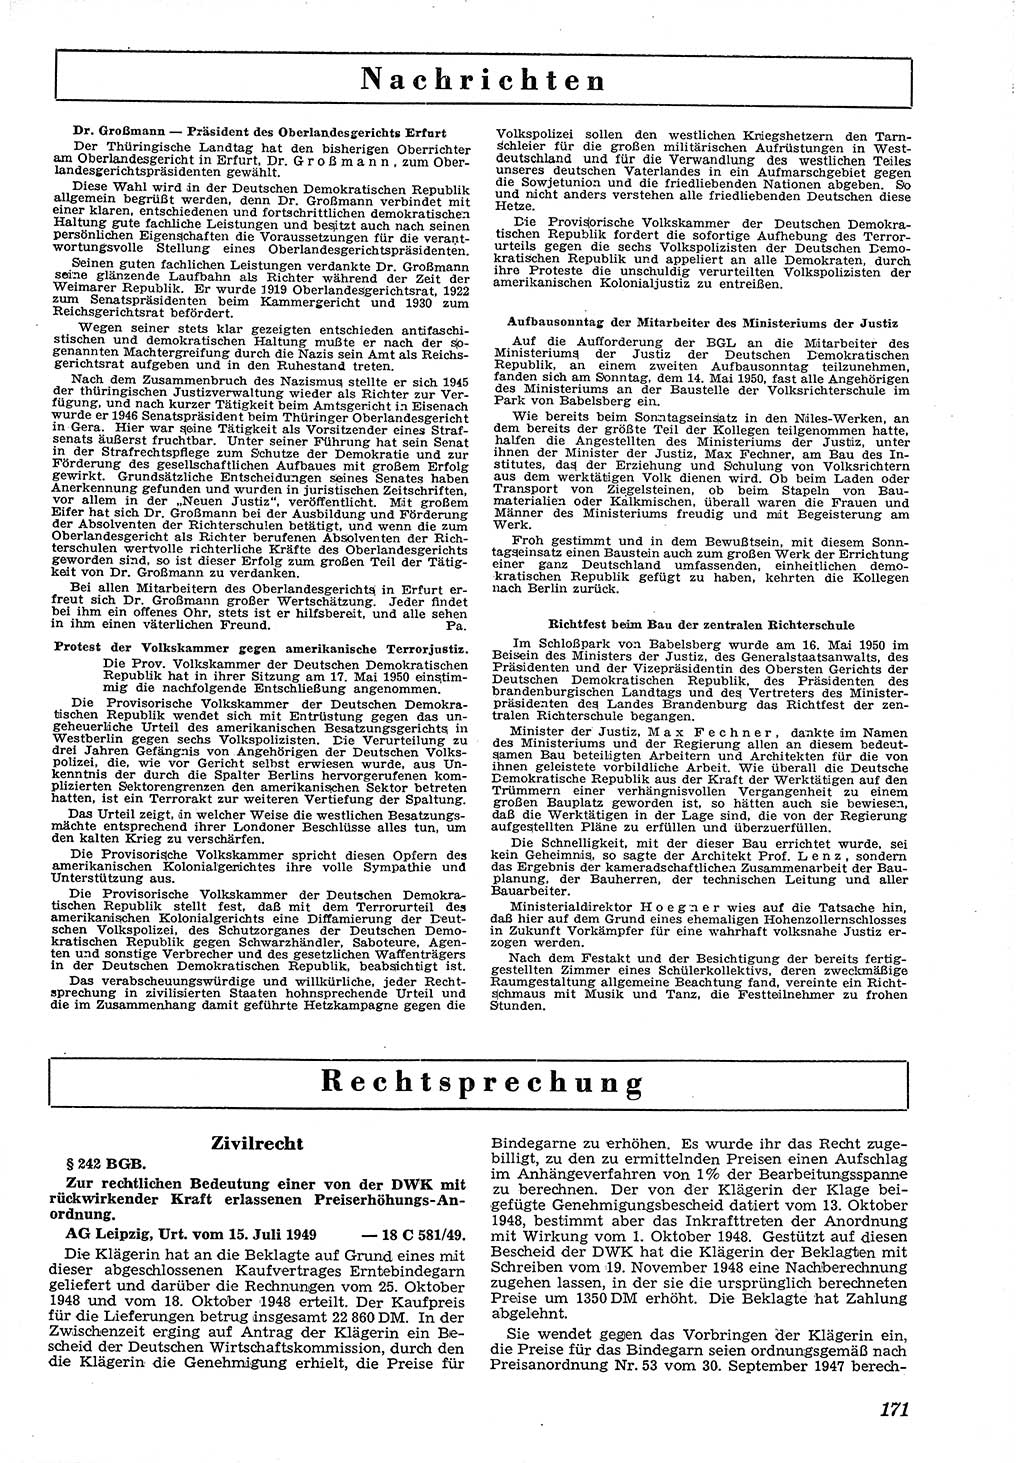 Neue Justiz (NJ), Zeitschrift für Recht und Rechtswissenschaft [Deutsche Demokratische Republik (DDR)], 4. Jahrgang 1950, Seite 171 (NJ DDR 1950, S. 171)